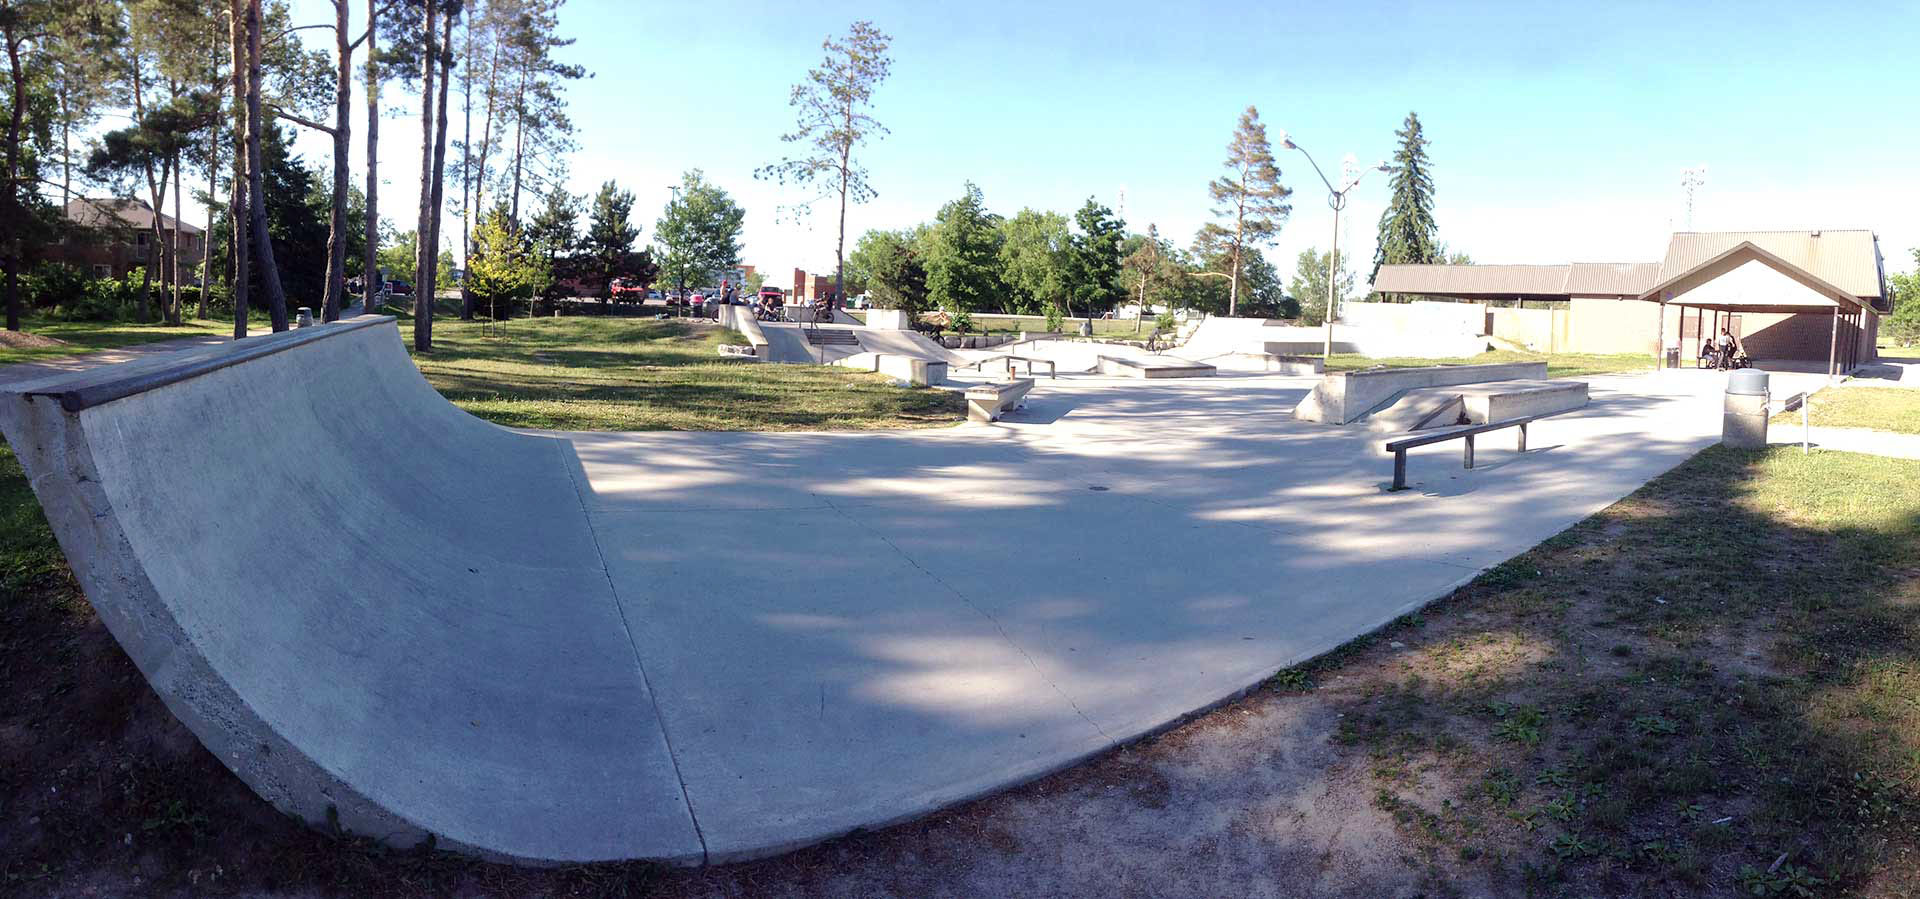 orangeville skatepark from the entrance